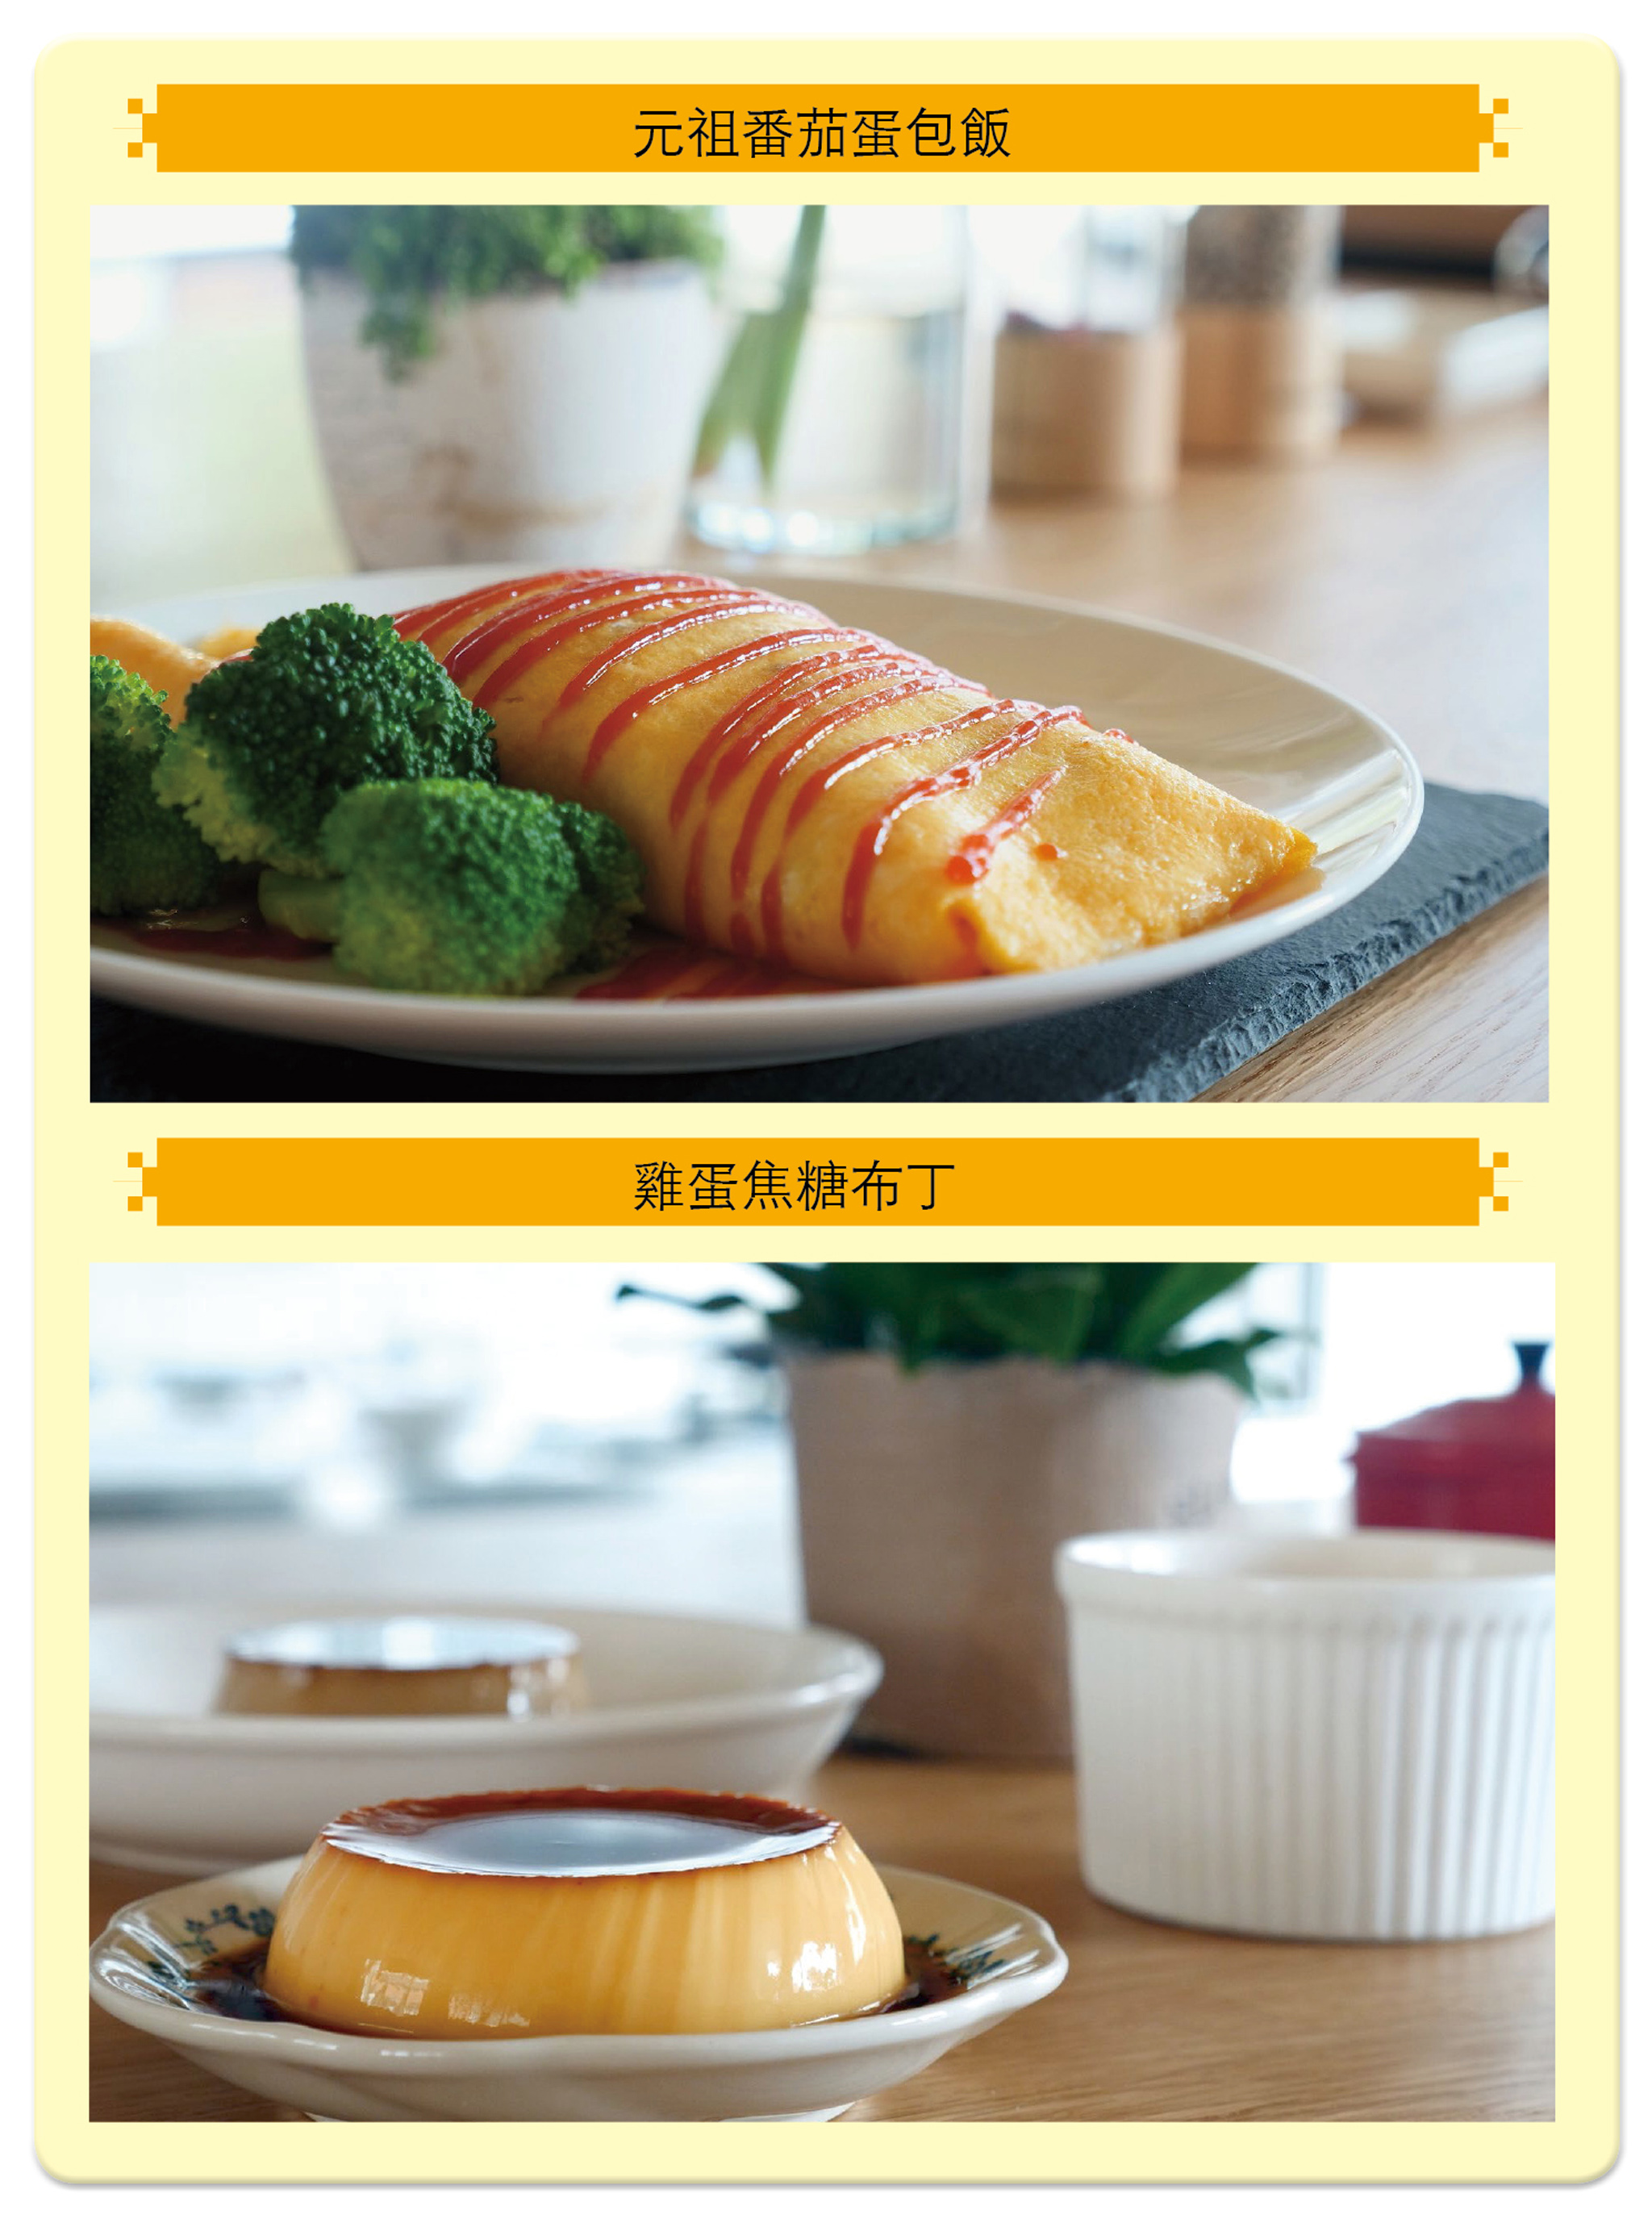 雞蛋可以當成正餐材料做成「元祖番茄蛋包飯」（上圖），也能夠變化出讓人幸福滿滿的甜點「雞蛋焦糖布丁」（下圖）。